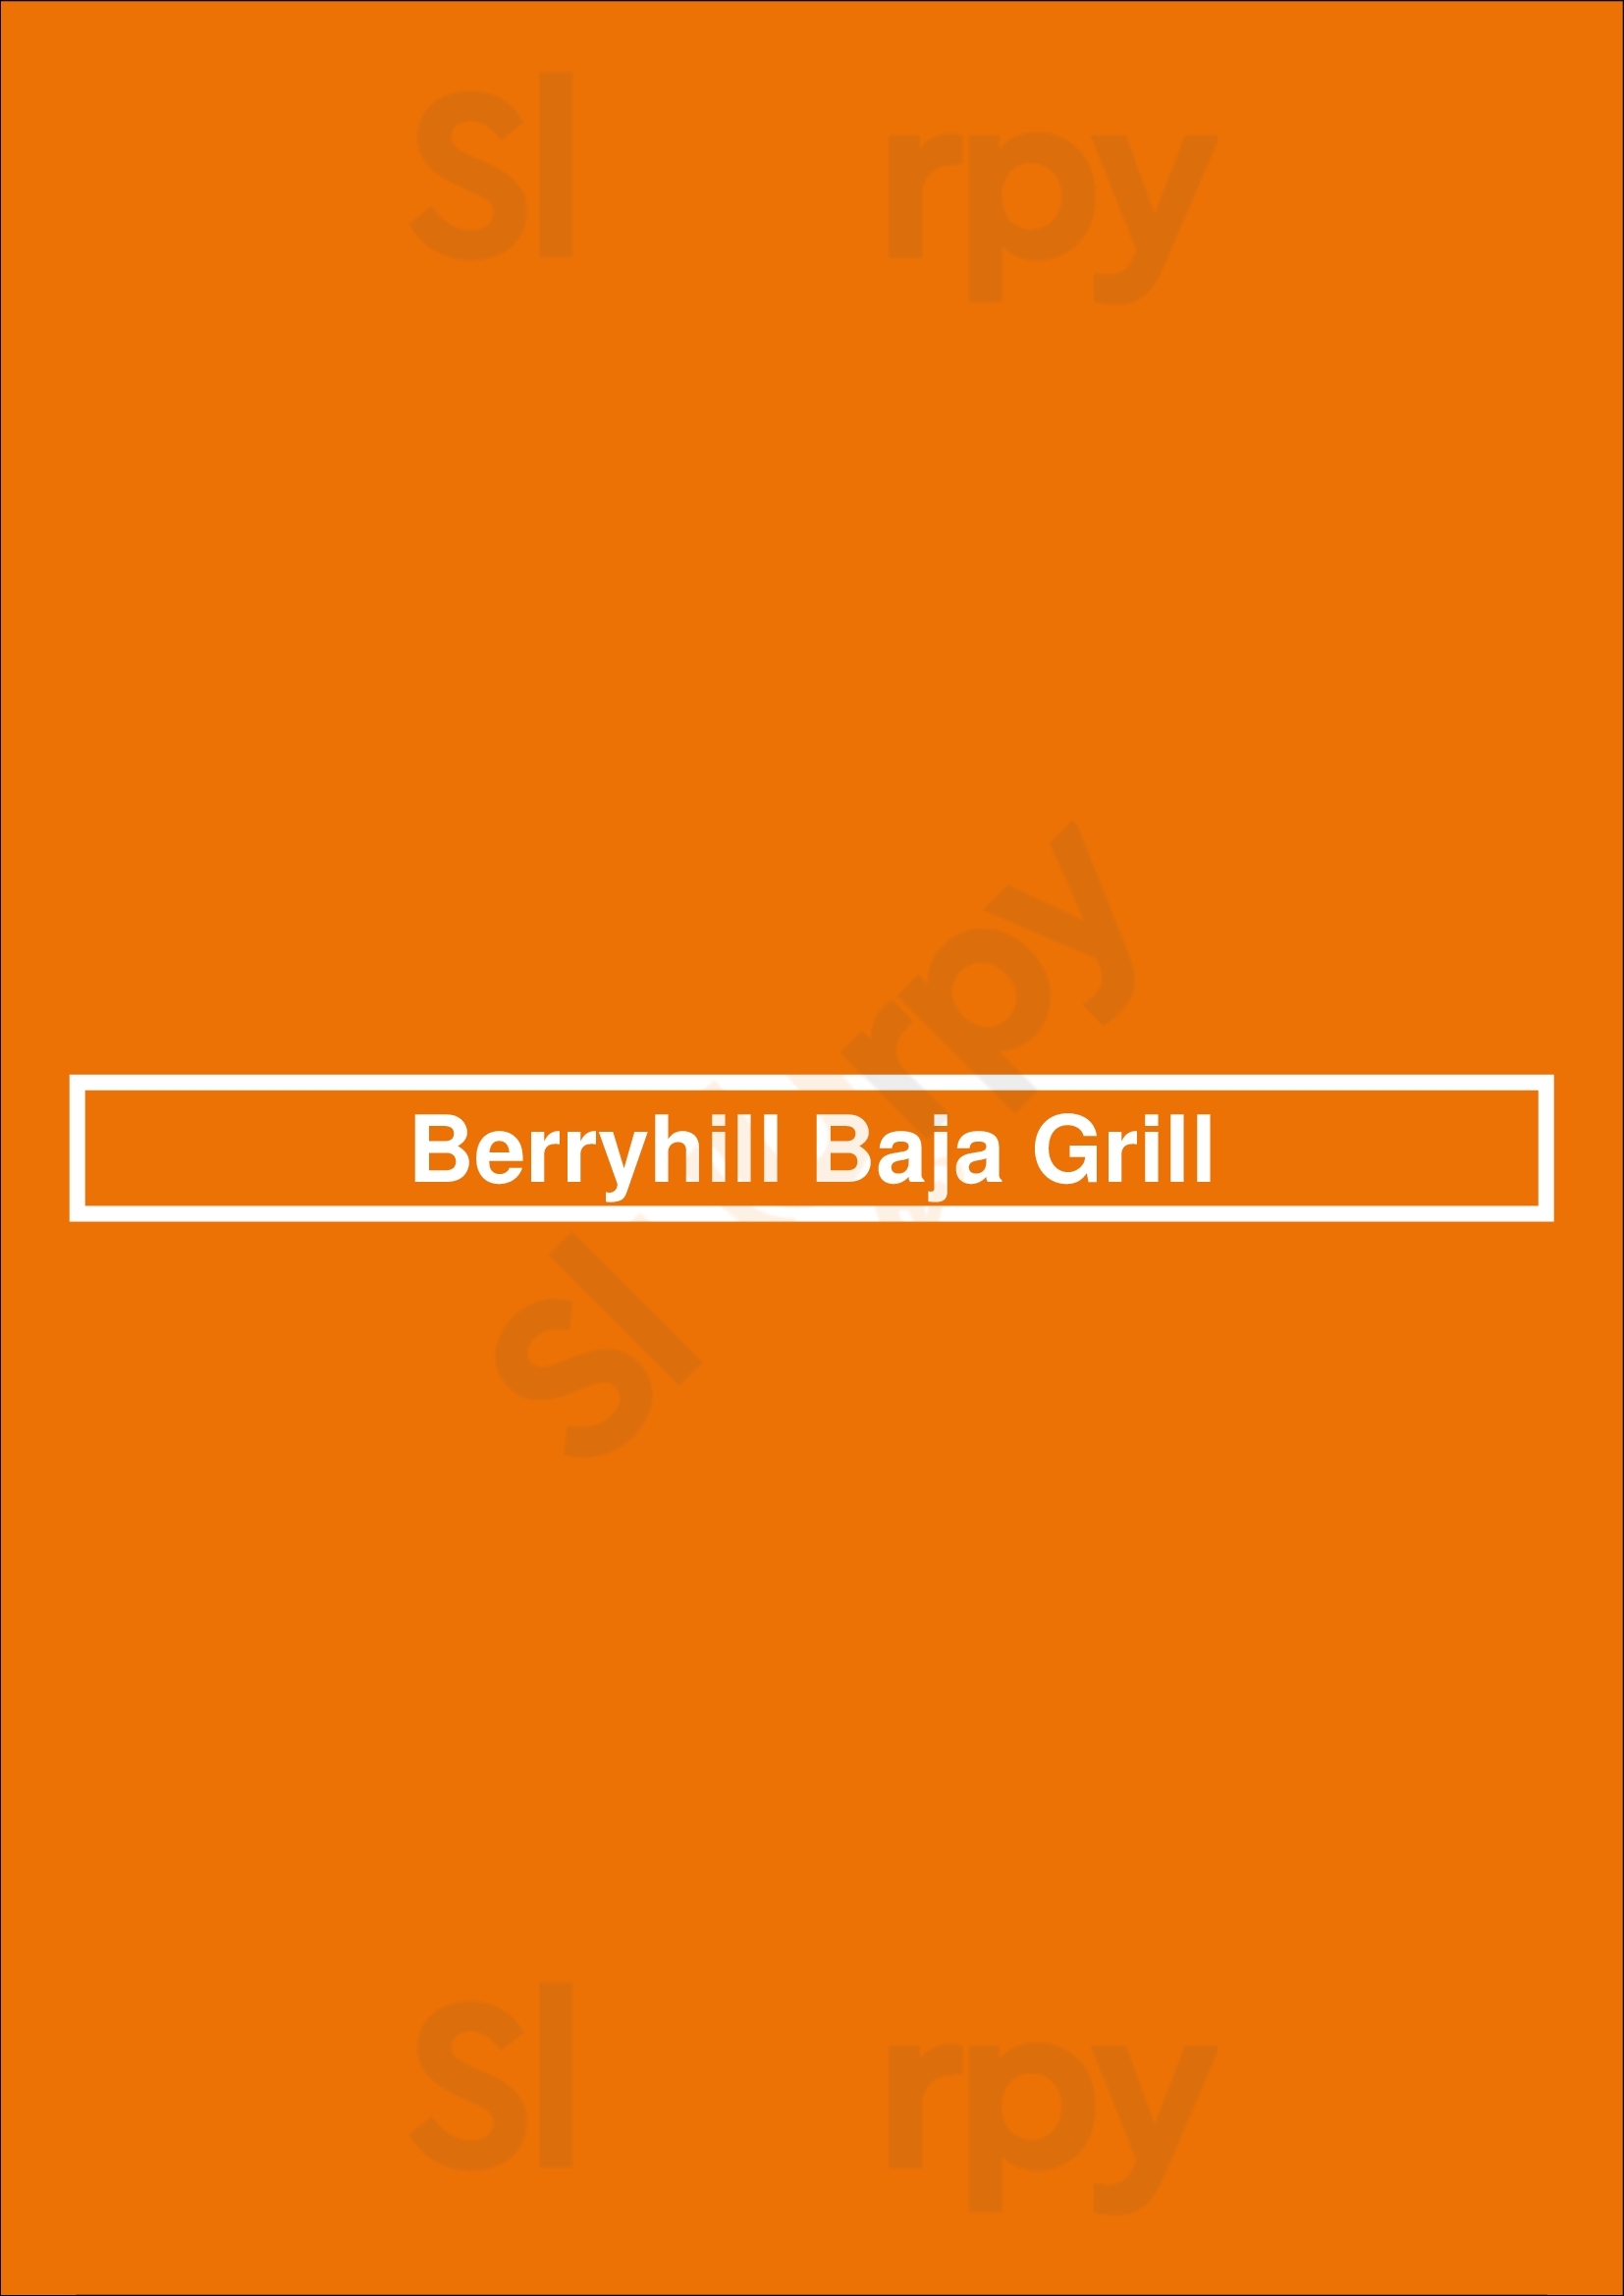 Berryhill Baja Grill Houston Menu - 1